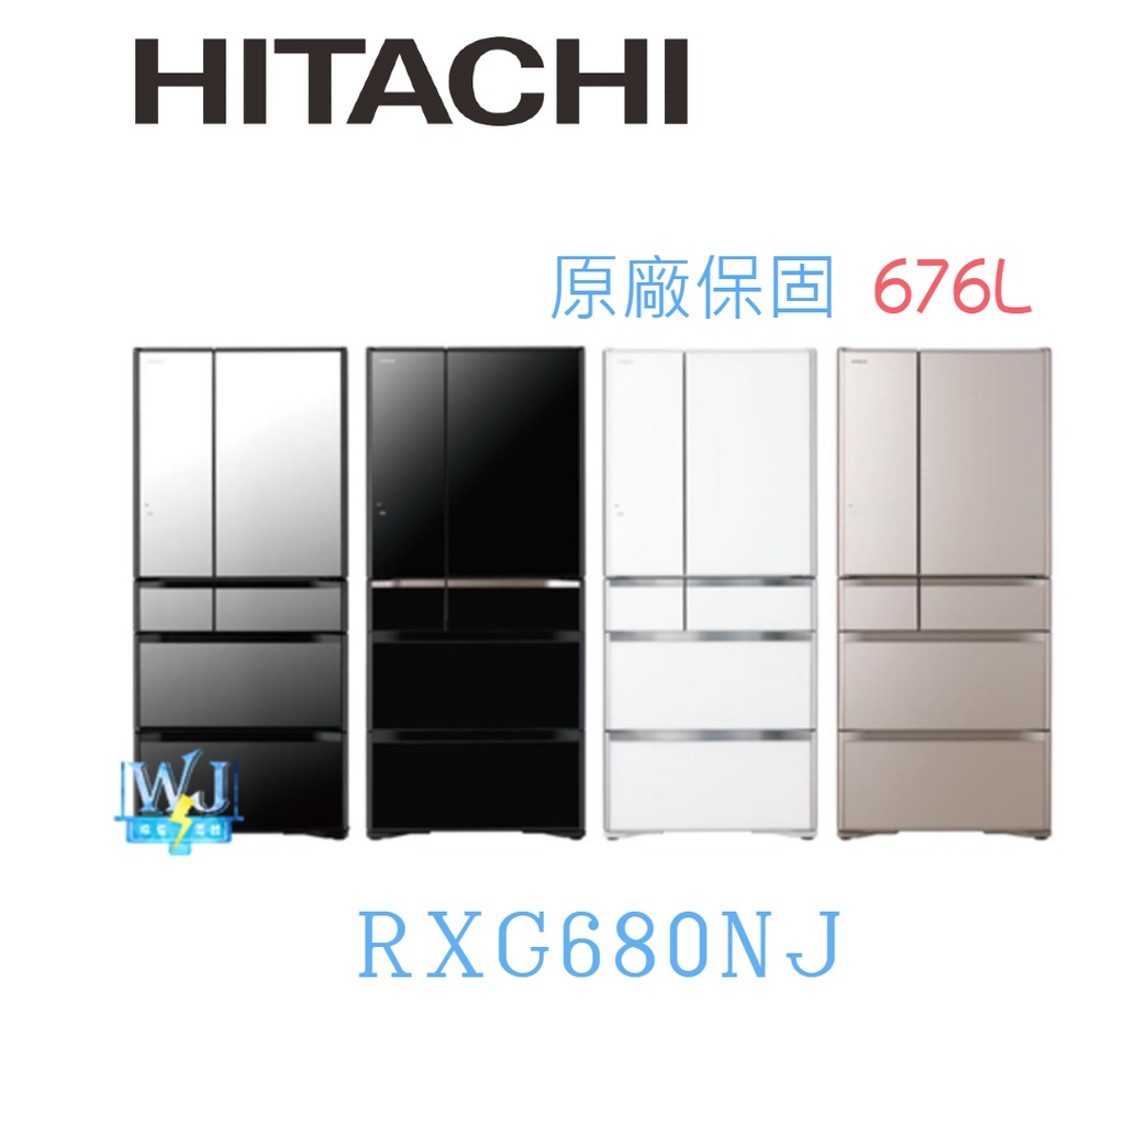 現貨*議價【獨家折扣碼】HITACHI 日立 RXG680NJ 六門 變頻 冰箱 R-XG680NJ 676公升 電冰箱